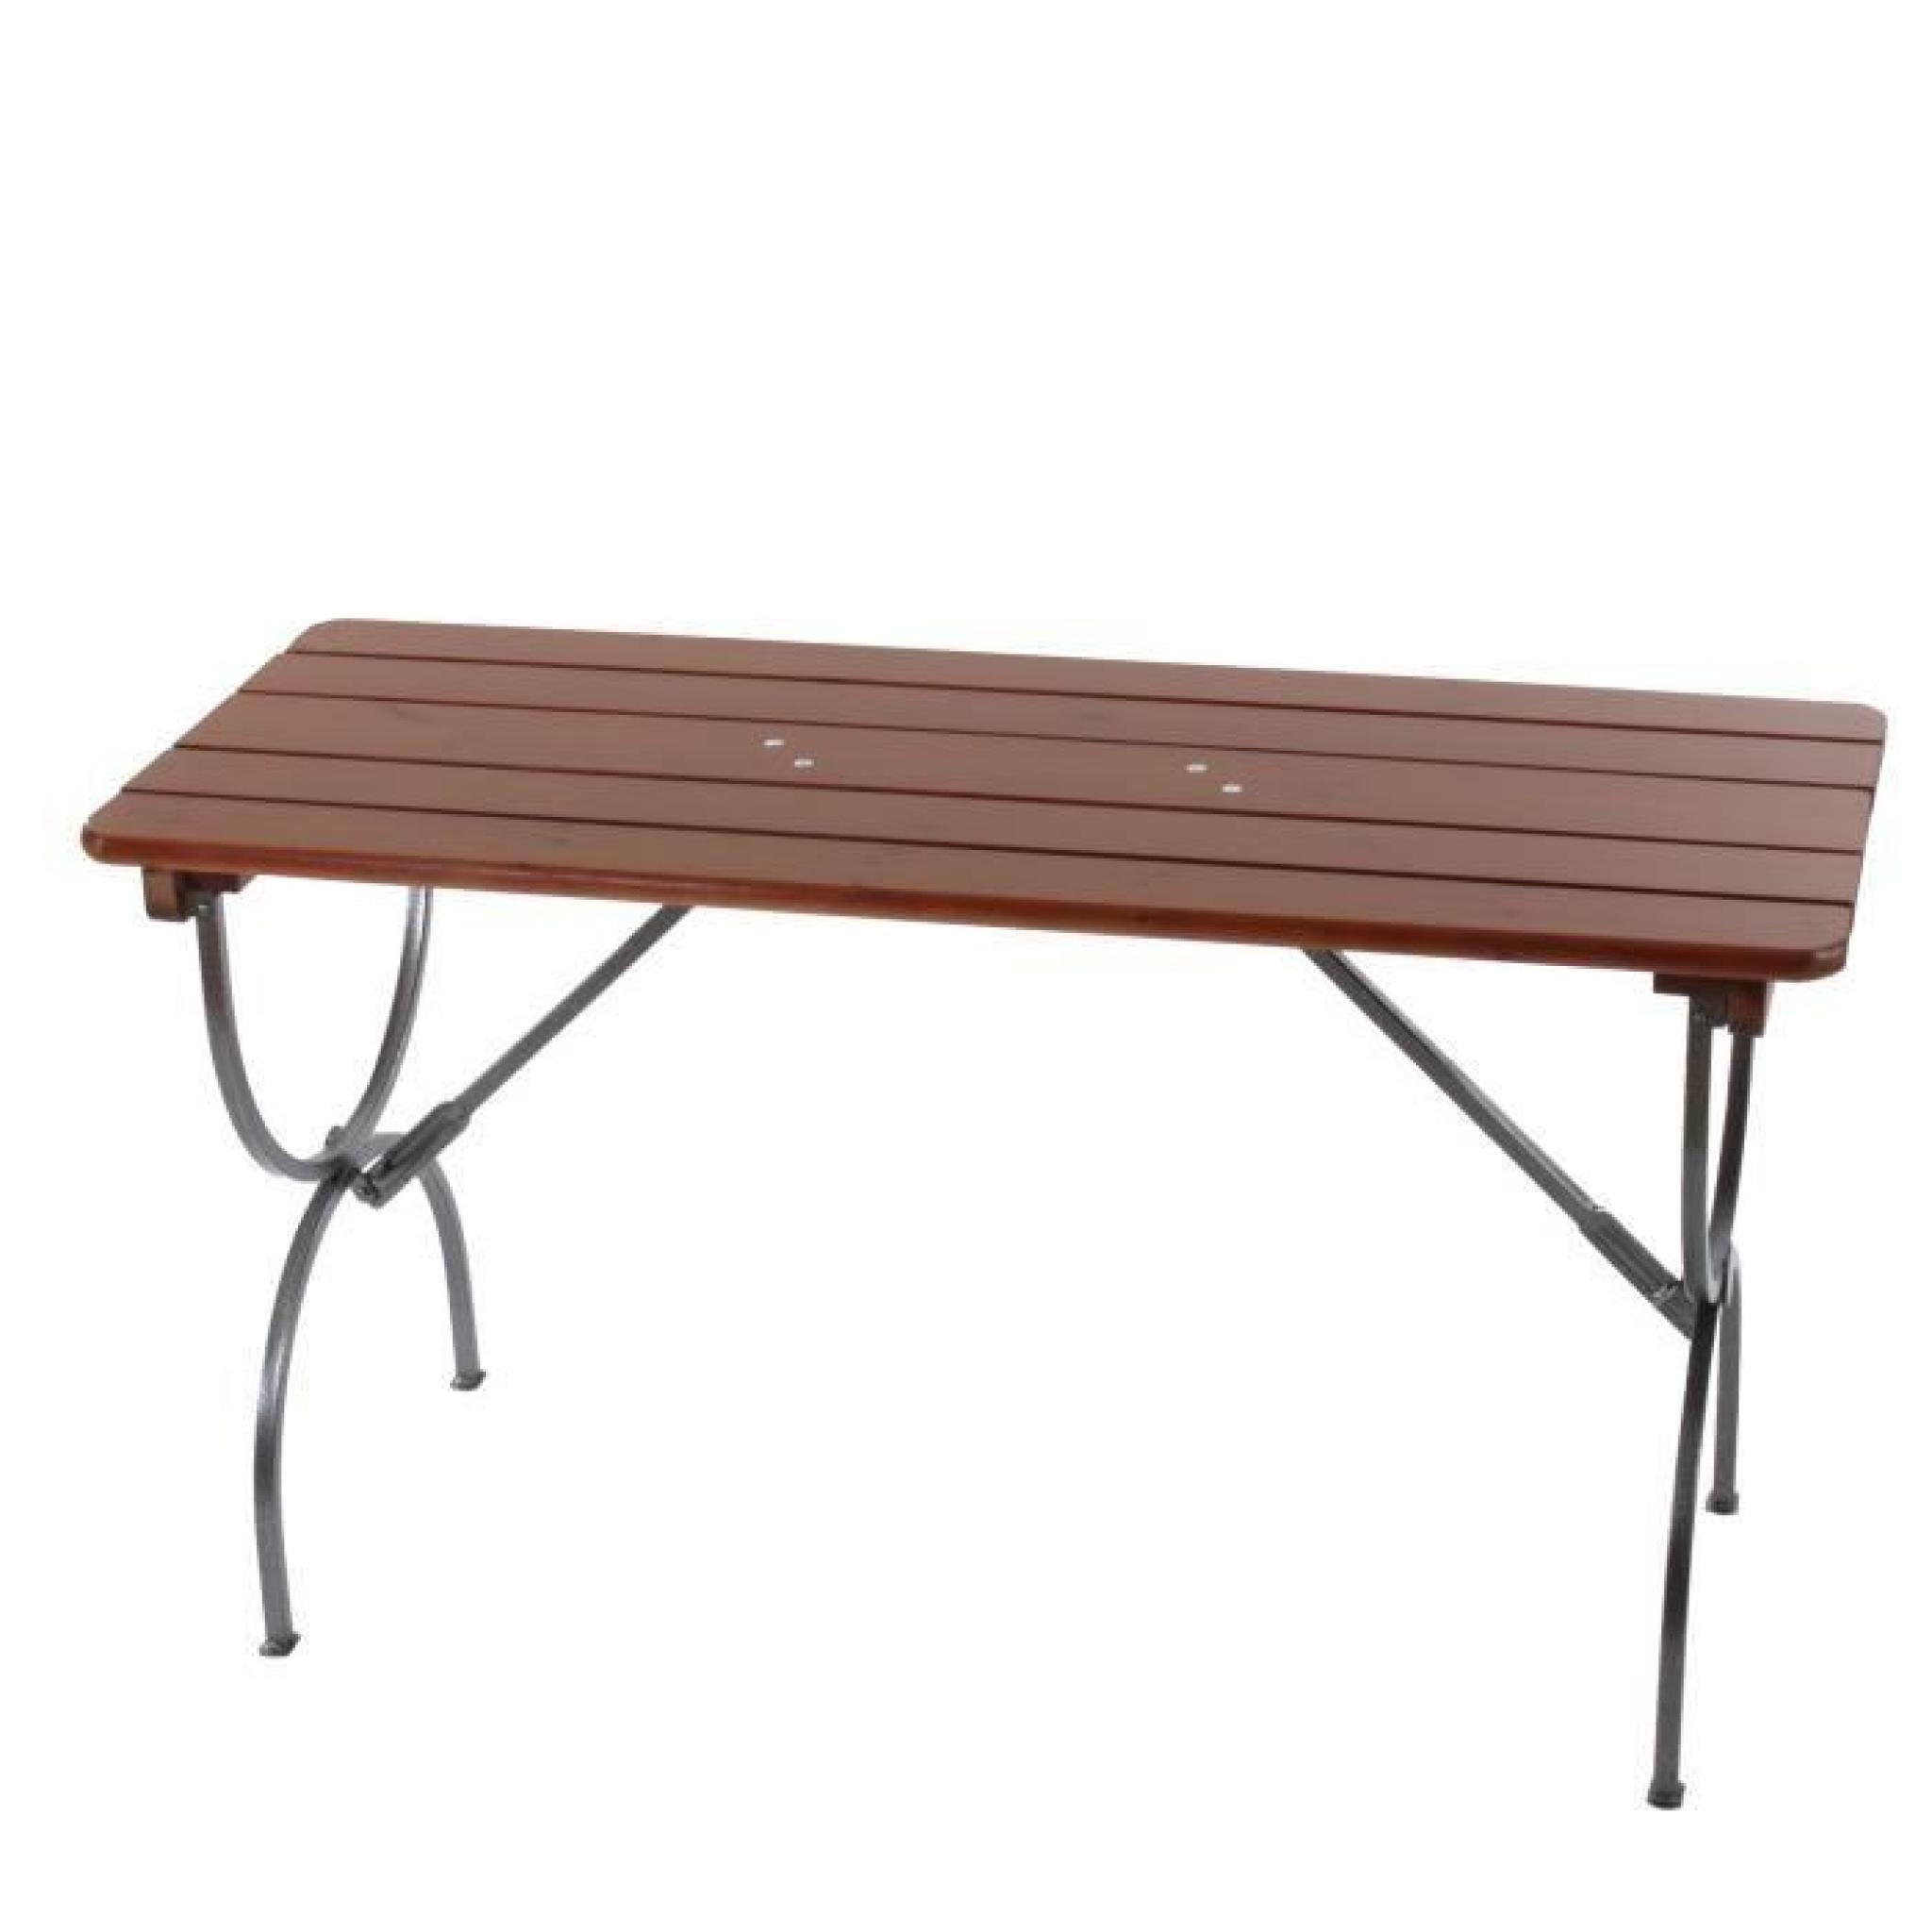 Table de jardin LINZ, bois massif, pliable,150x60x81cm.